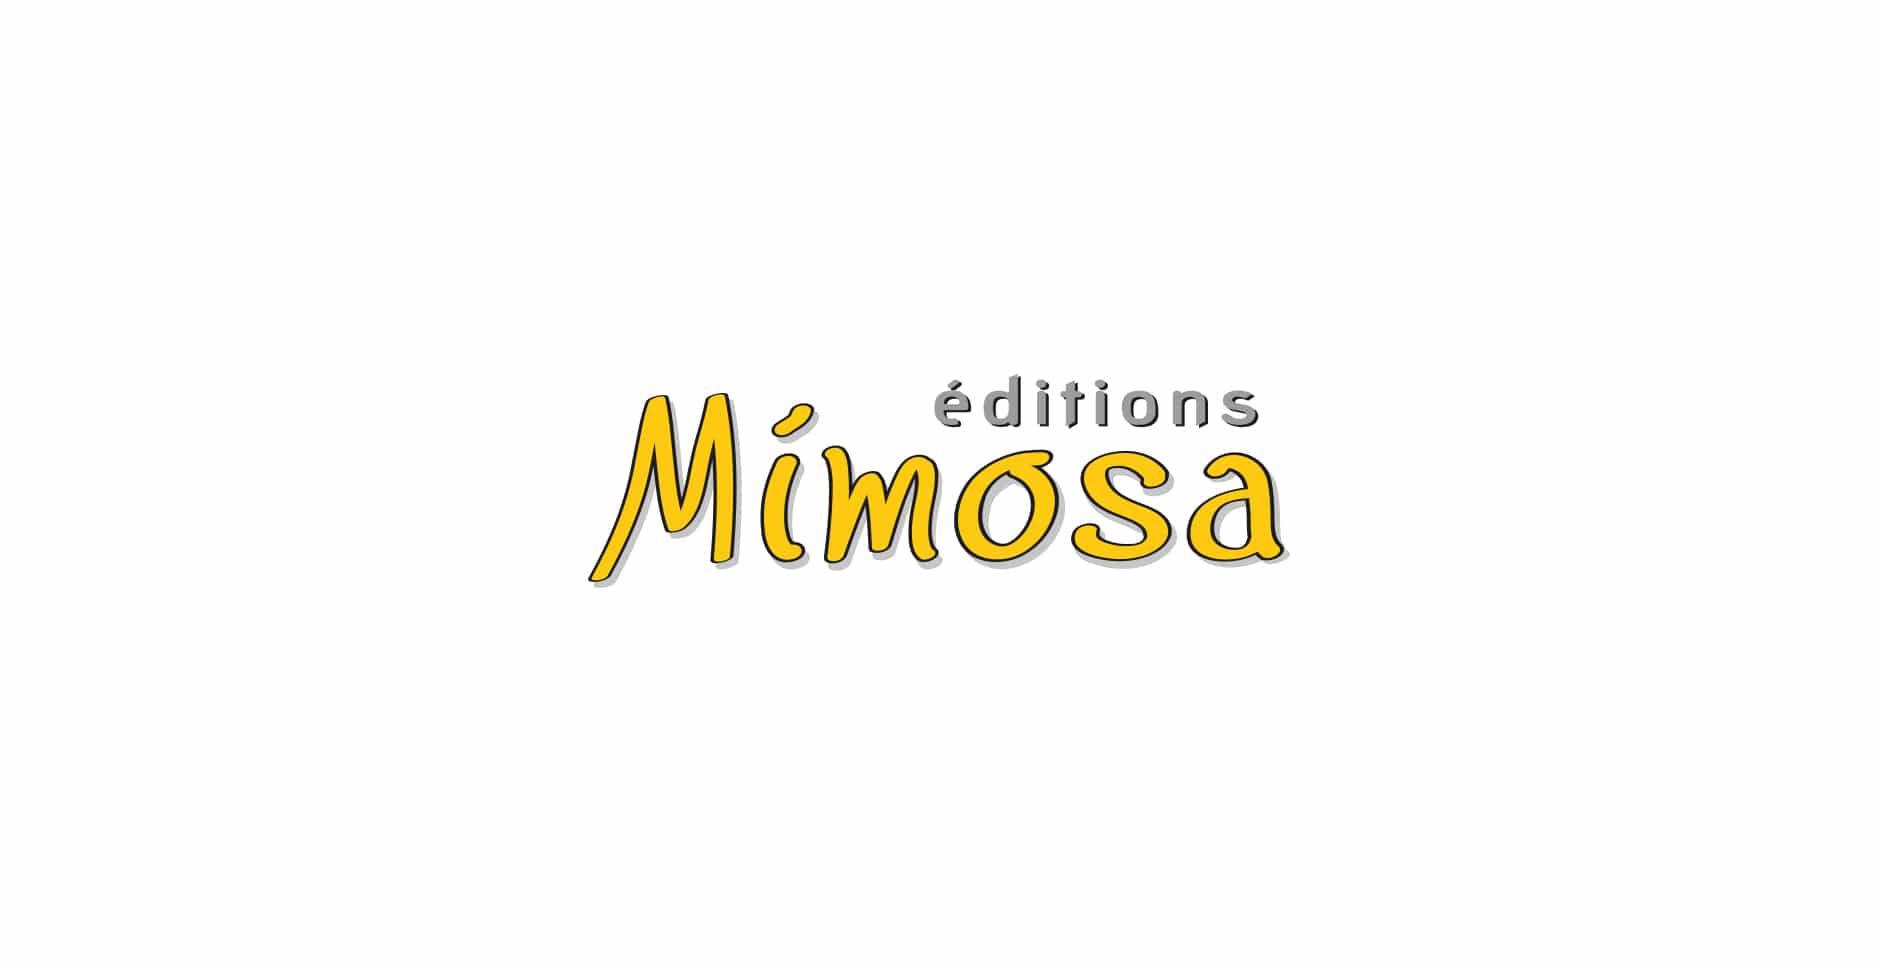 Editions Mimosa